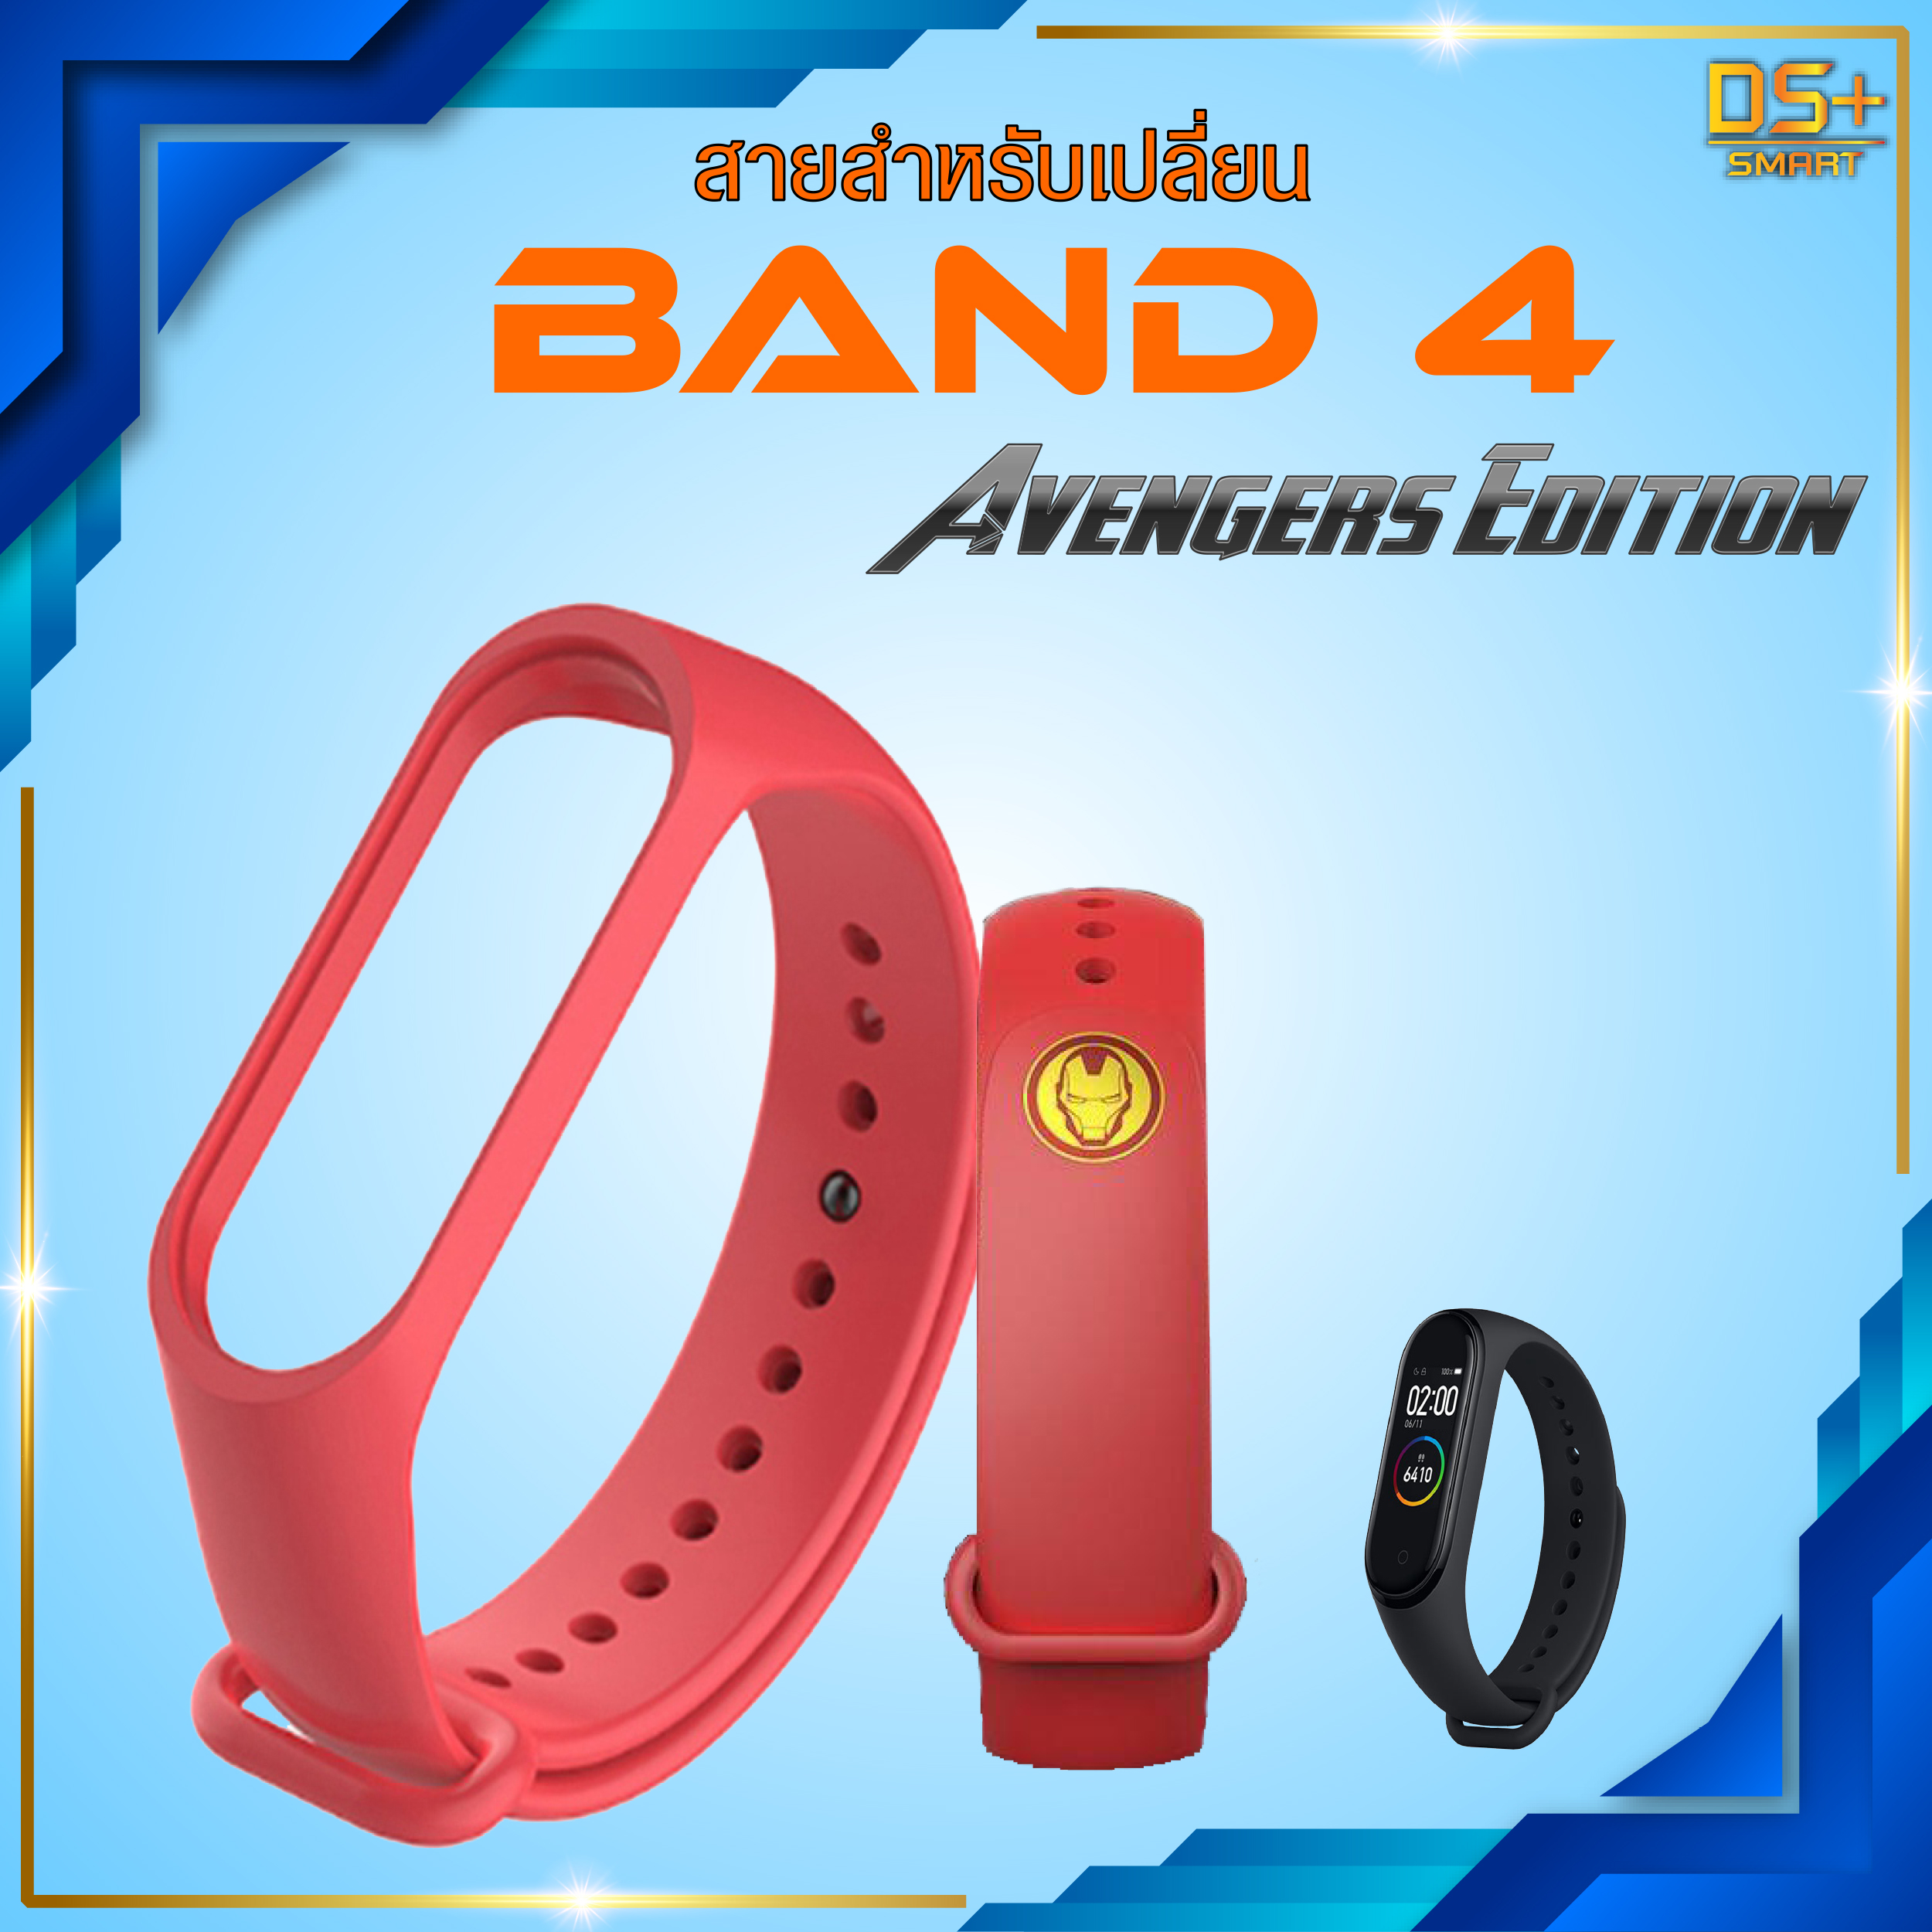 สายรัด สำหรับเปลี่ยน Mi Band 3/4 Wristband Strap [Avengers Edition]